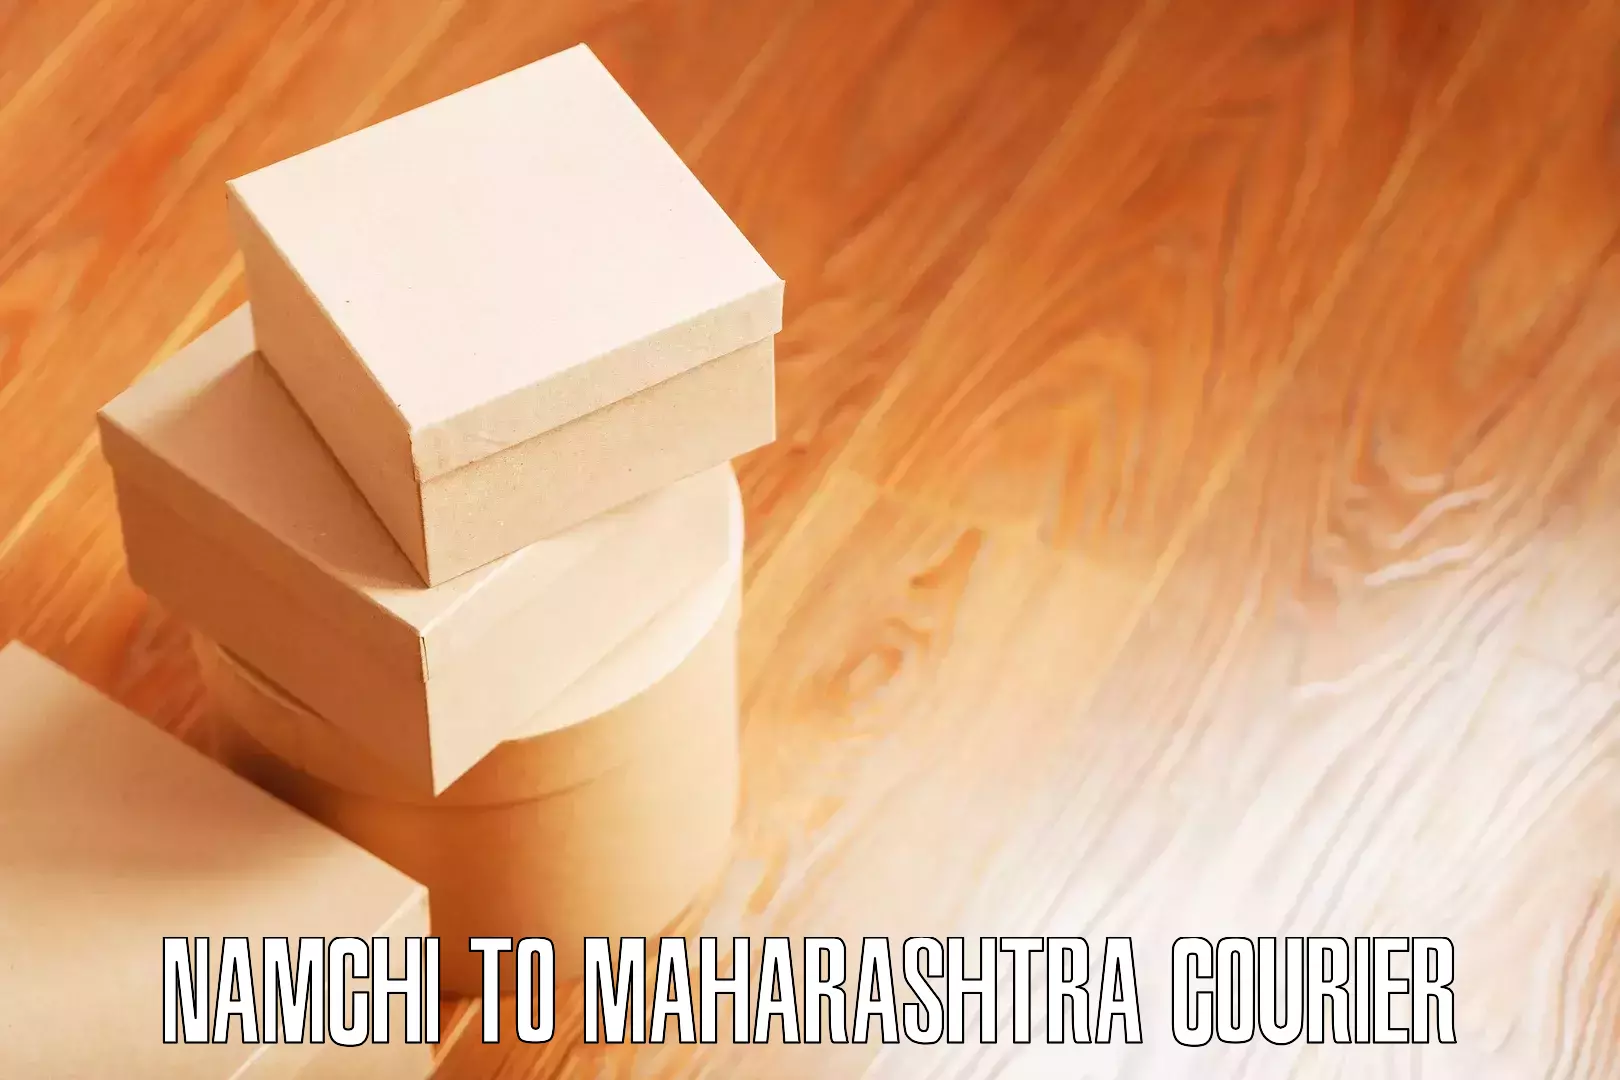 Quality moving and storage Namchi to Maharashtra